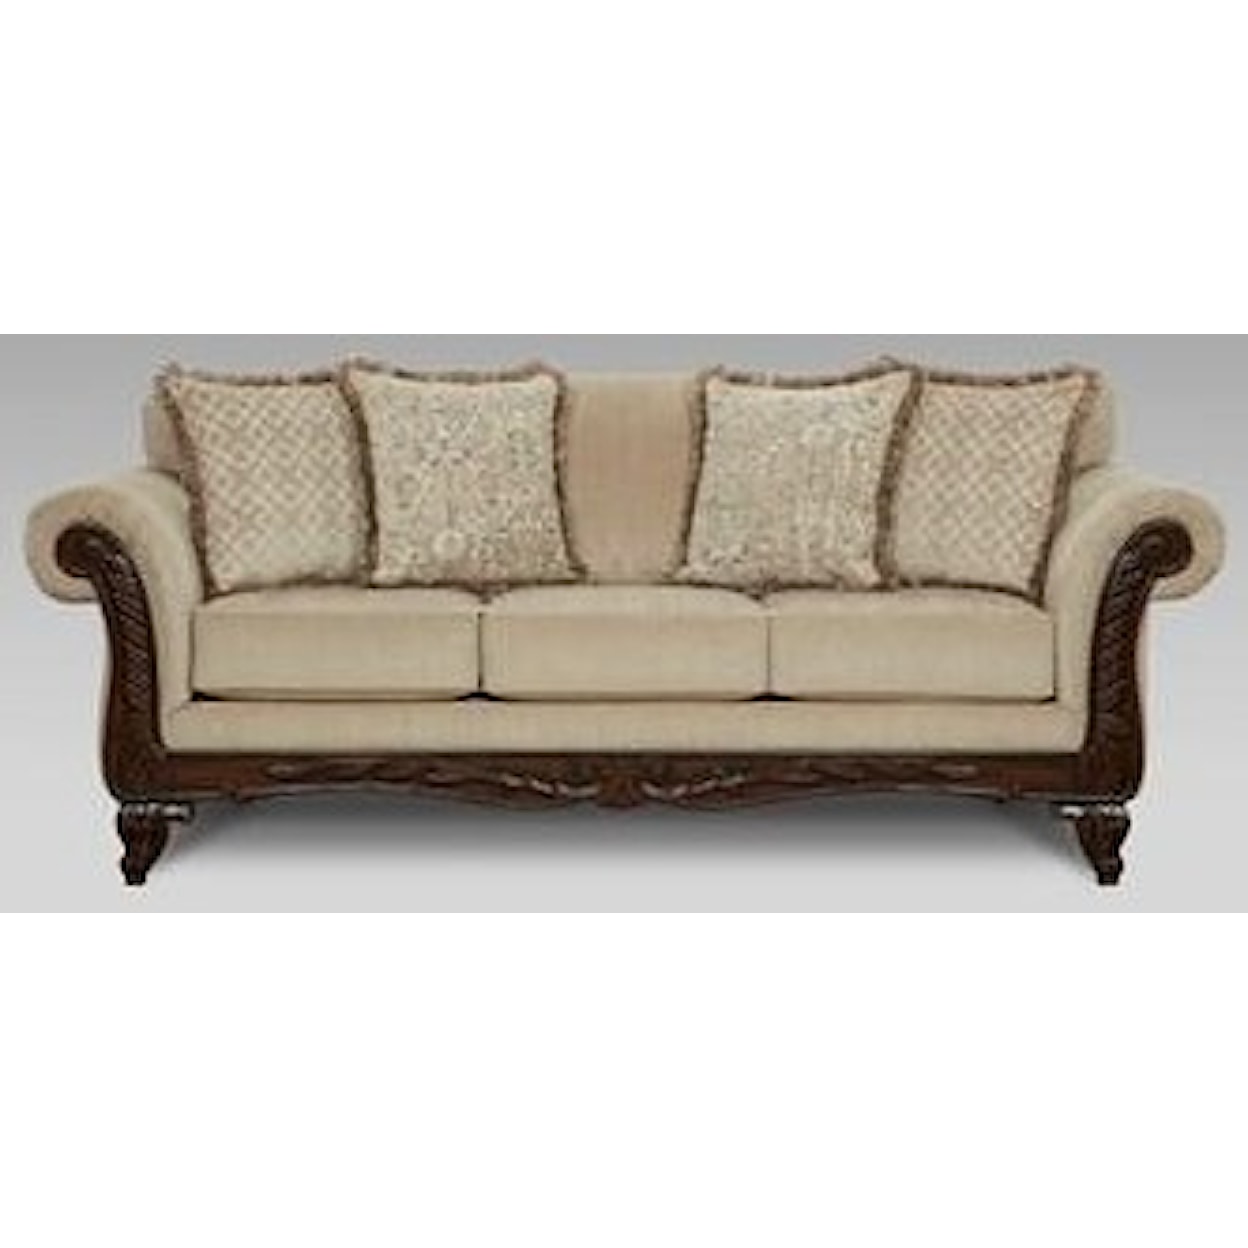 Affordable Furniture 8550 Emma Upholstered Sofa